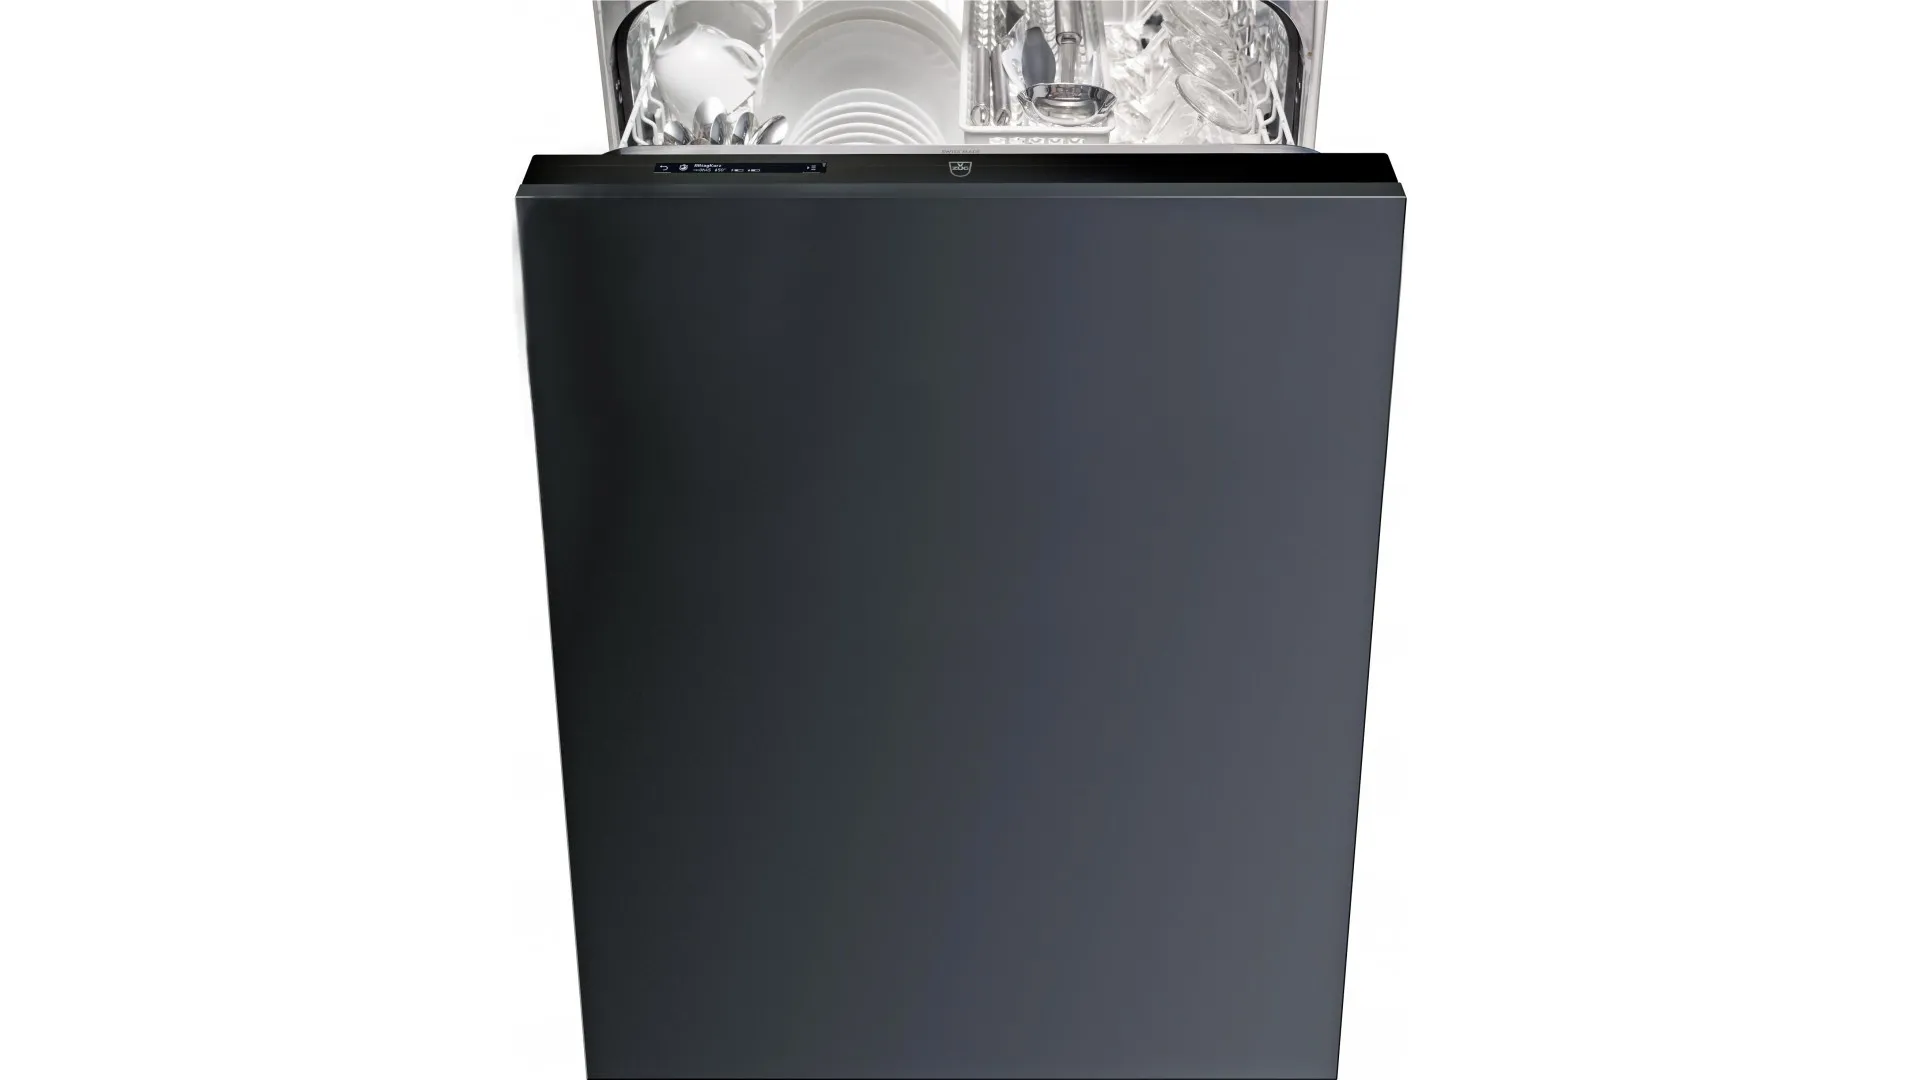 Adora V4000 dishwasher